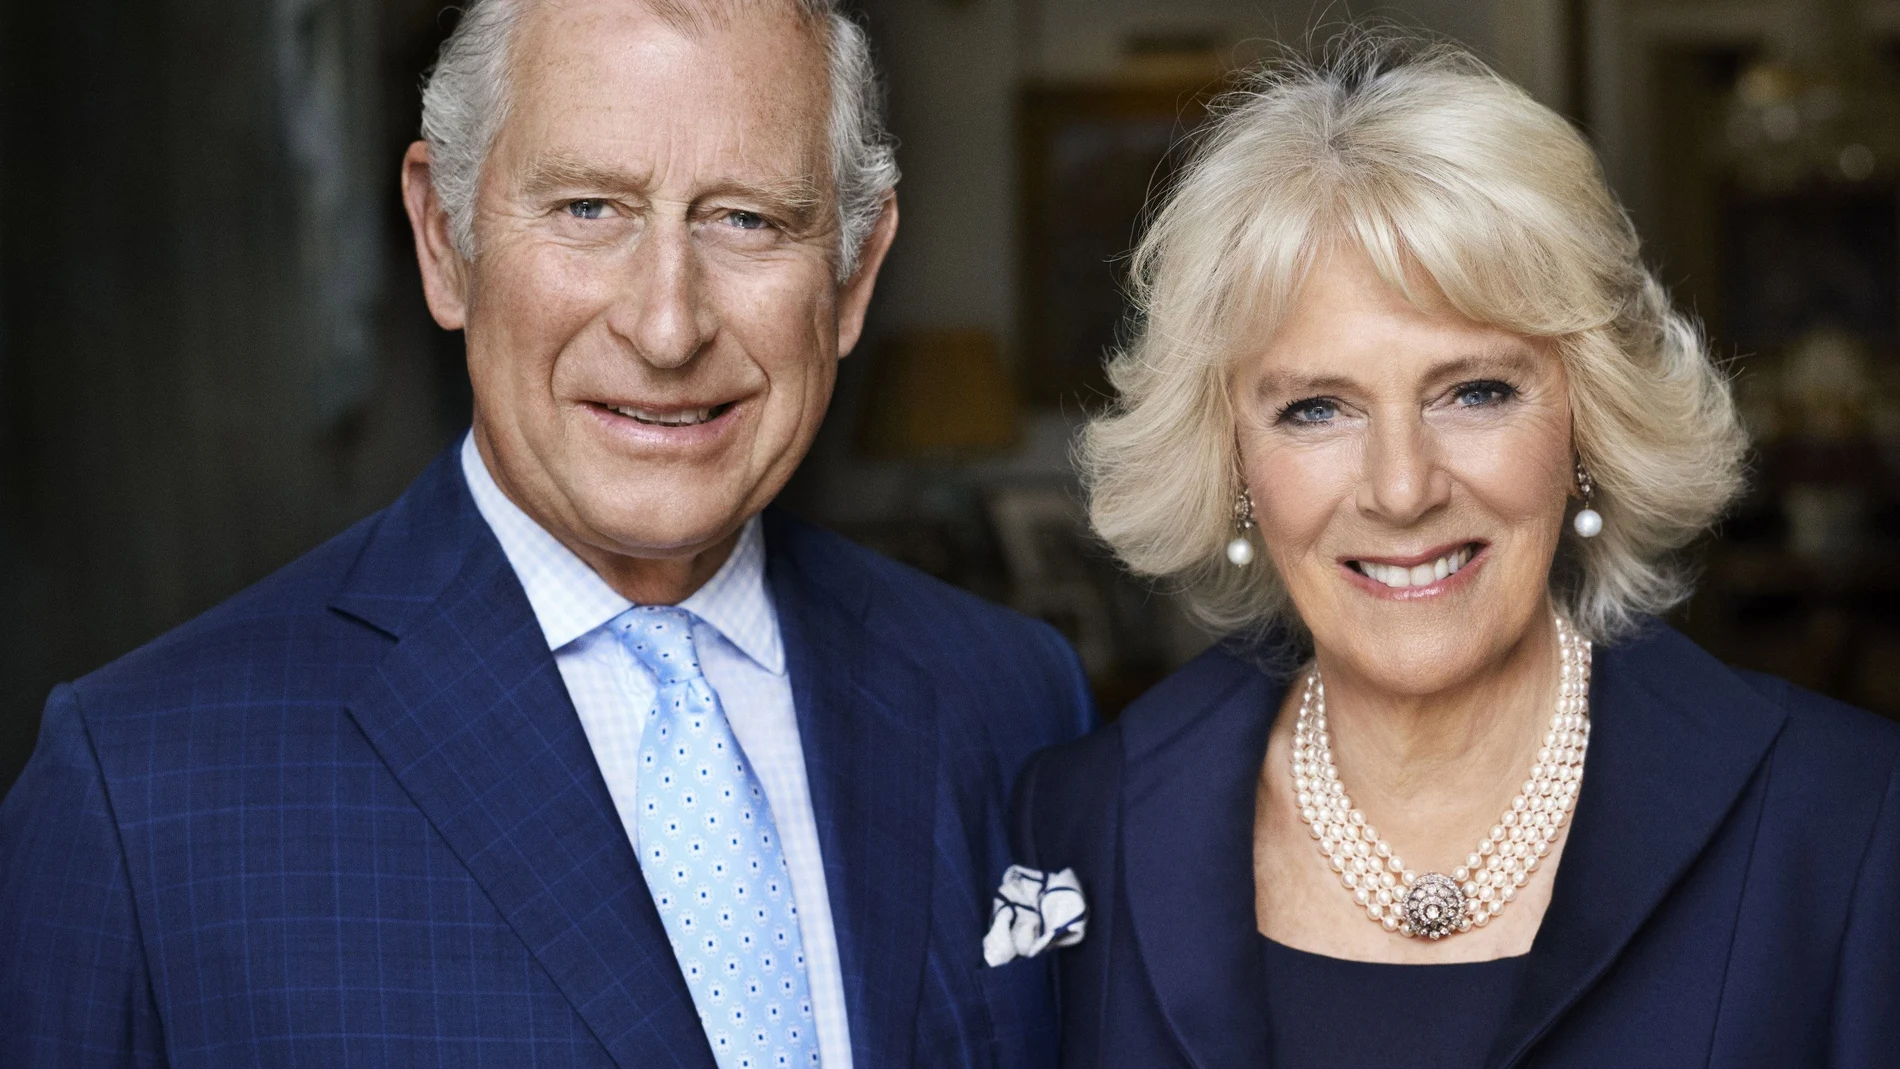 El rey Carlos III y la reina consorte Camilla